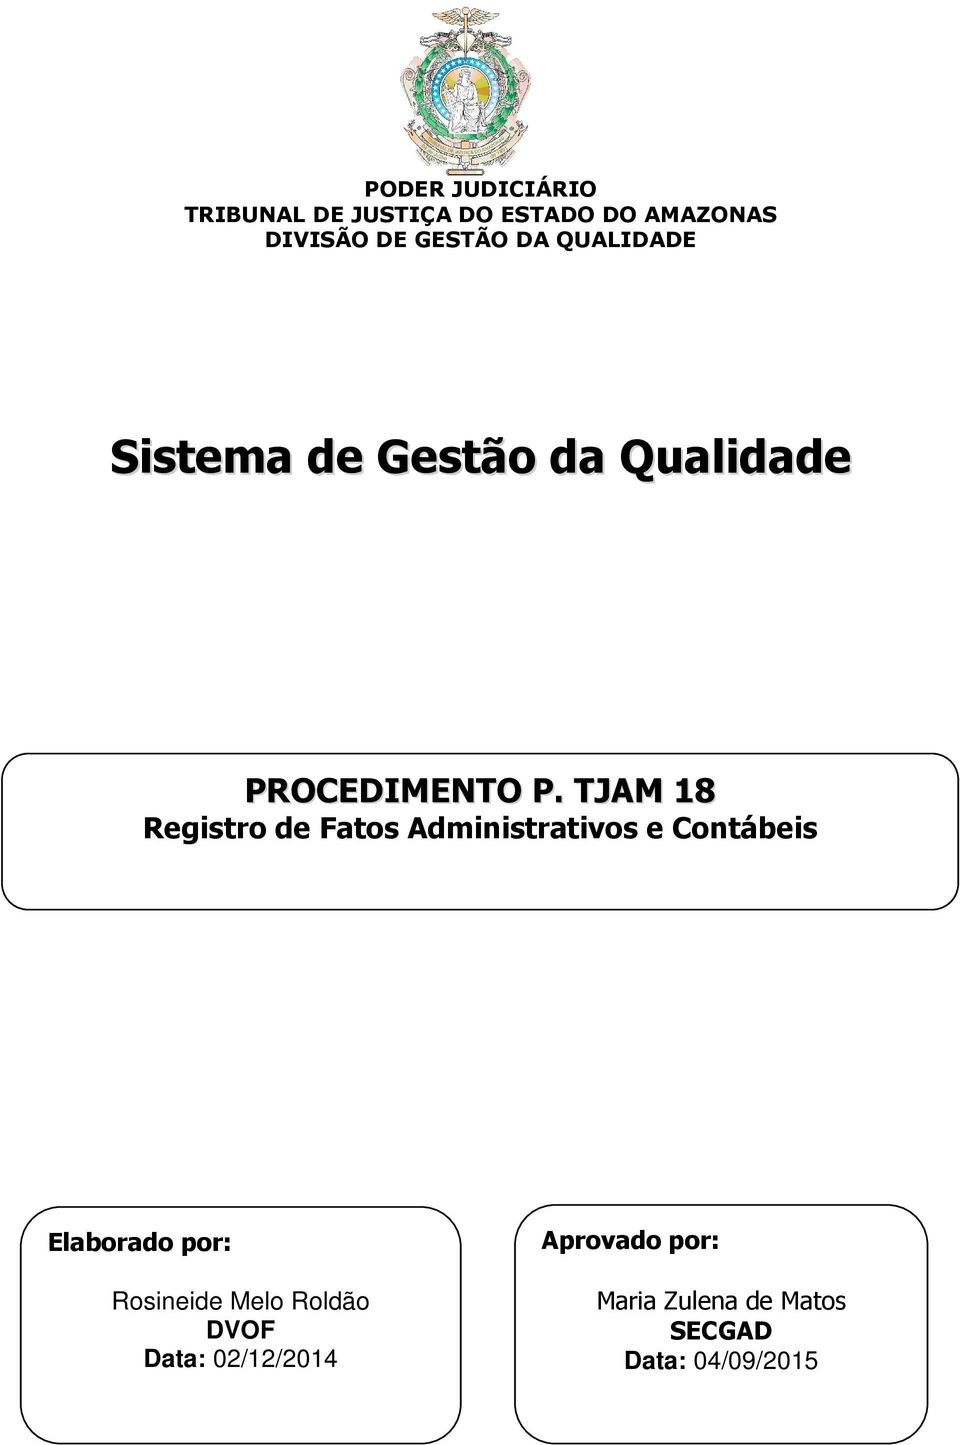 TJAM 18 Registro de Fatos Administrativos e Elaborado por: Rosineide